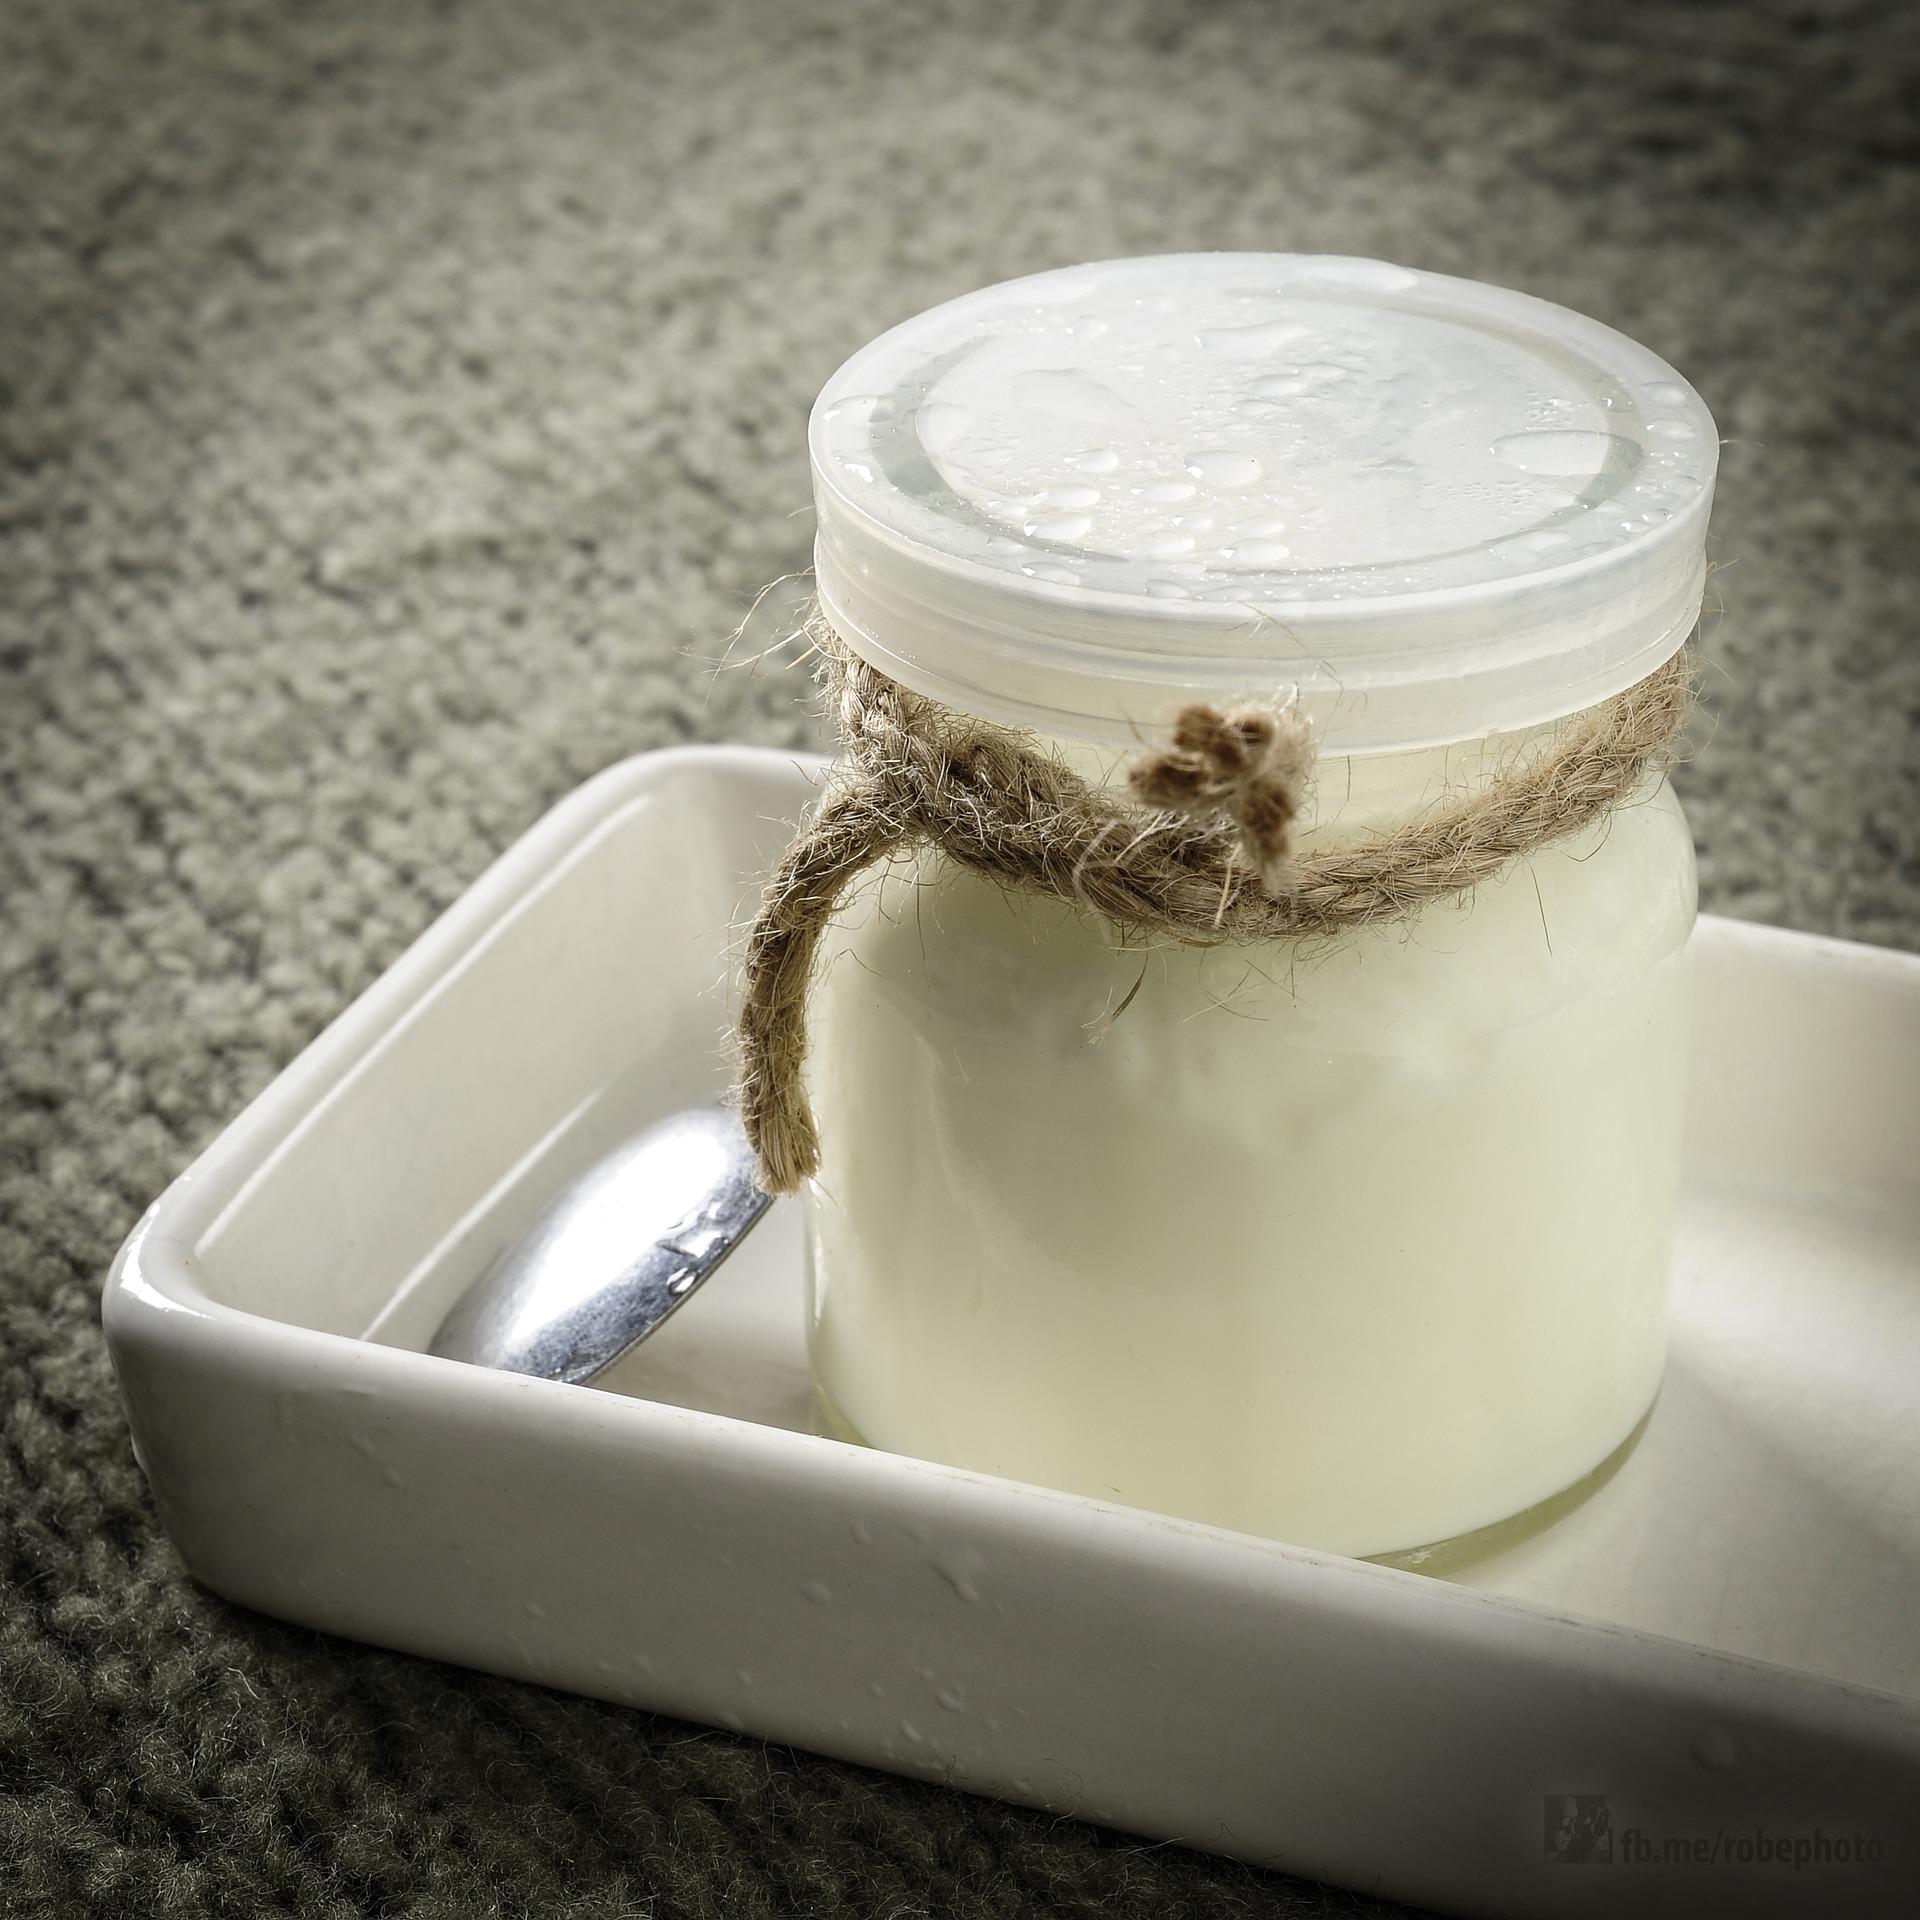 Jogurt dijeta: Skida 3 kilograma u 4 dana